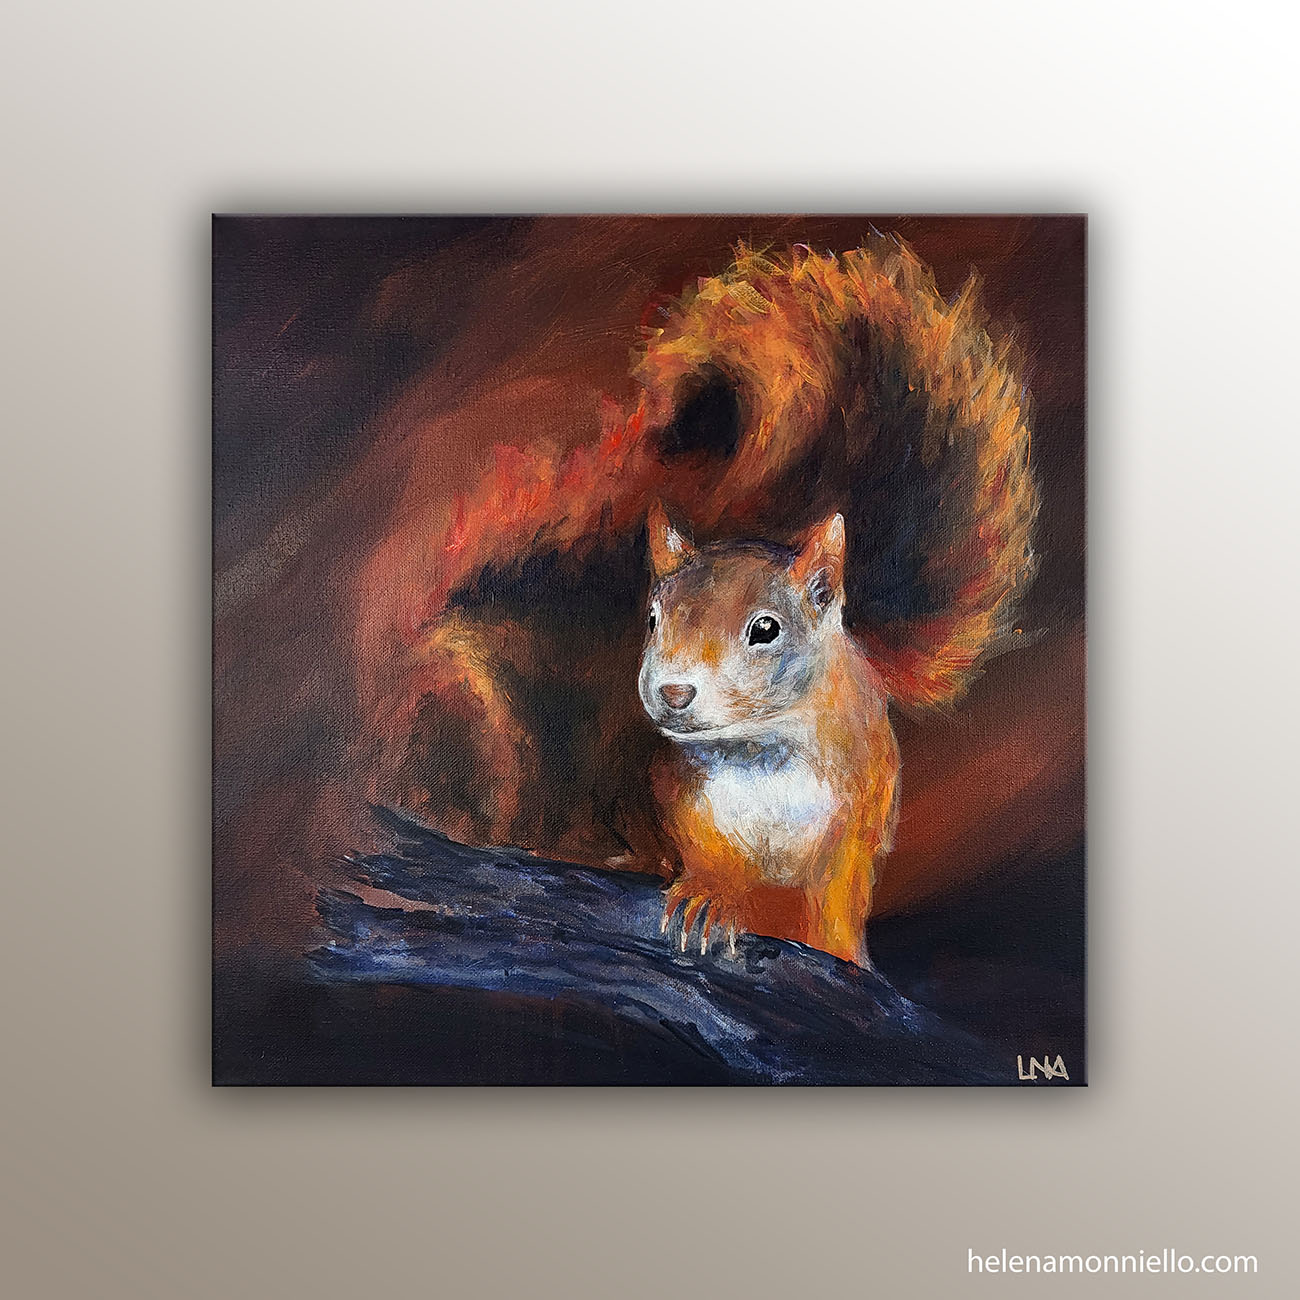 "Le trésor oublié" peinture animalière de l'artiste Helena Monniello représentant un écureuil